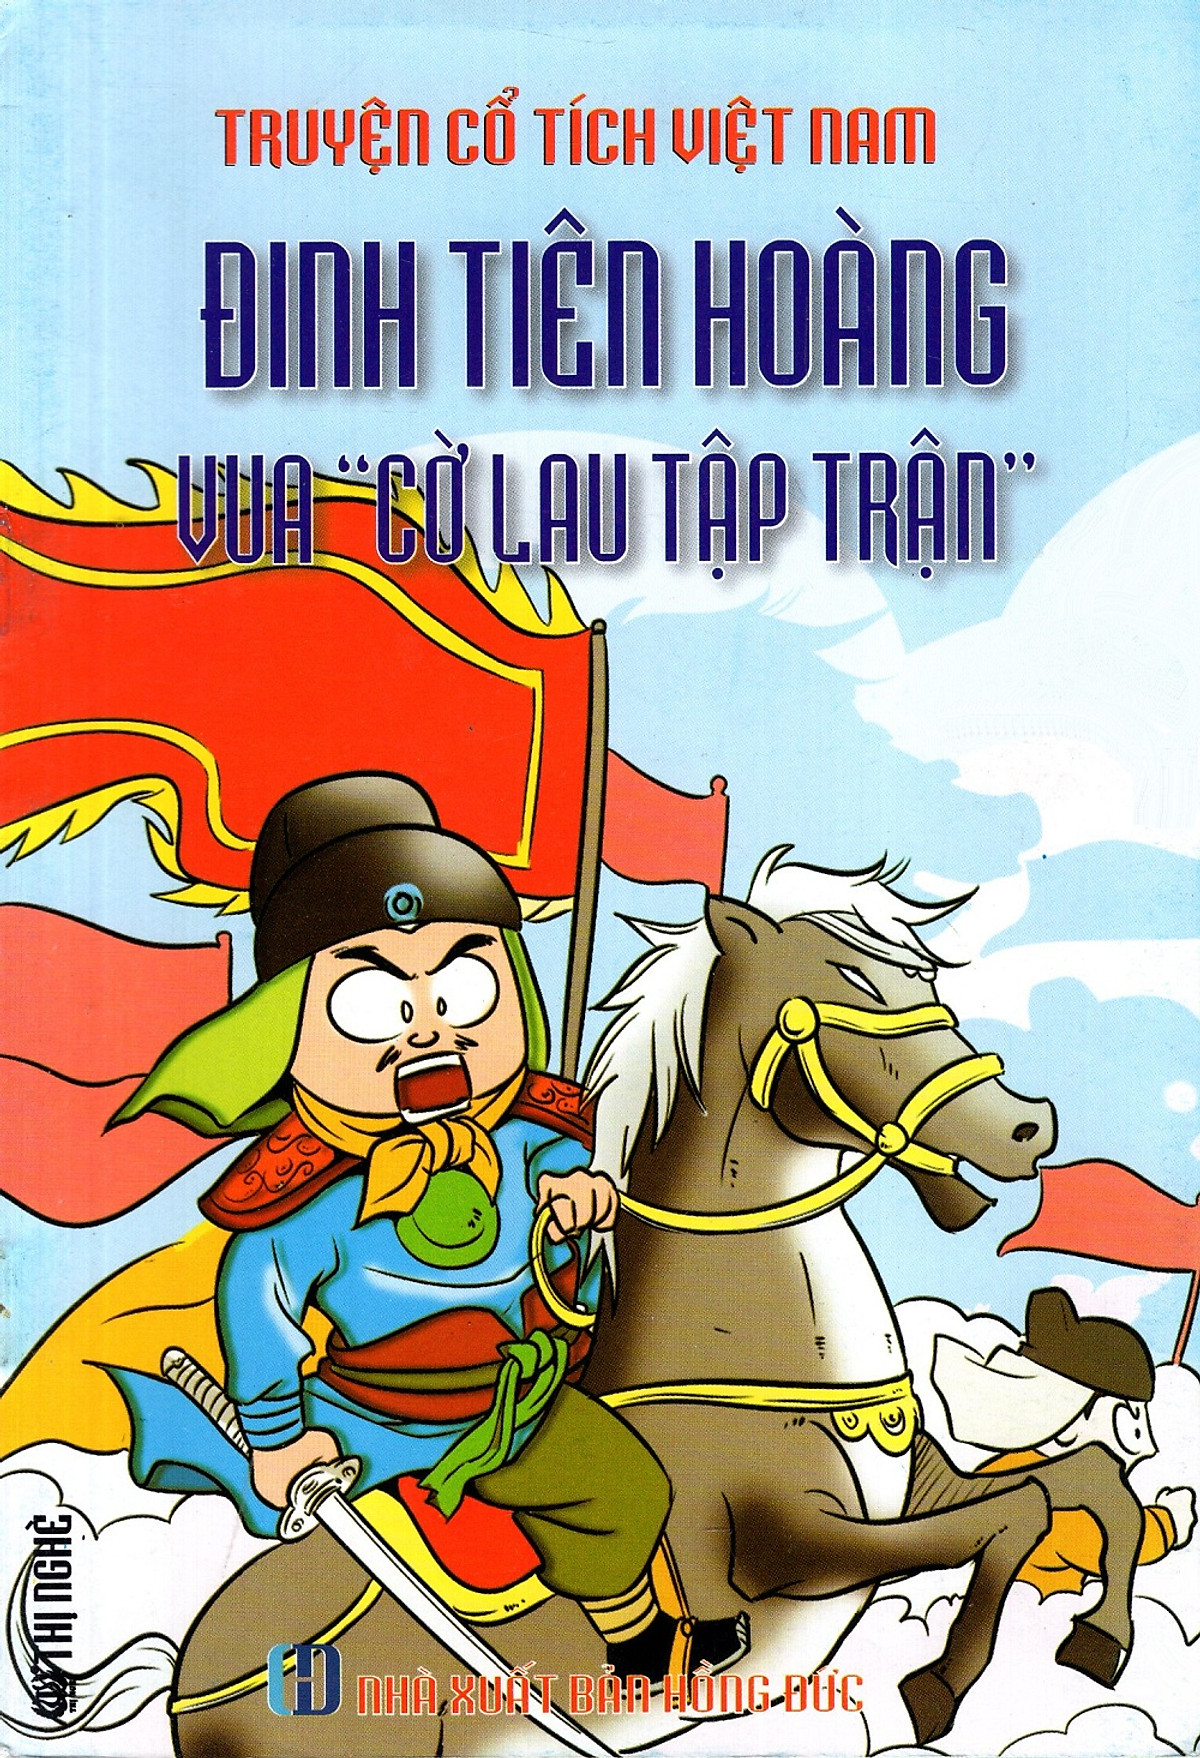 Truyện Cổ Tích Việt Nam - Đinh Tiên Hoàng - Vua 